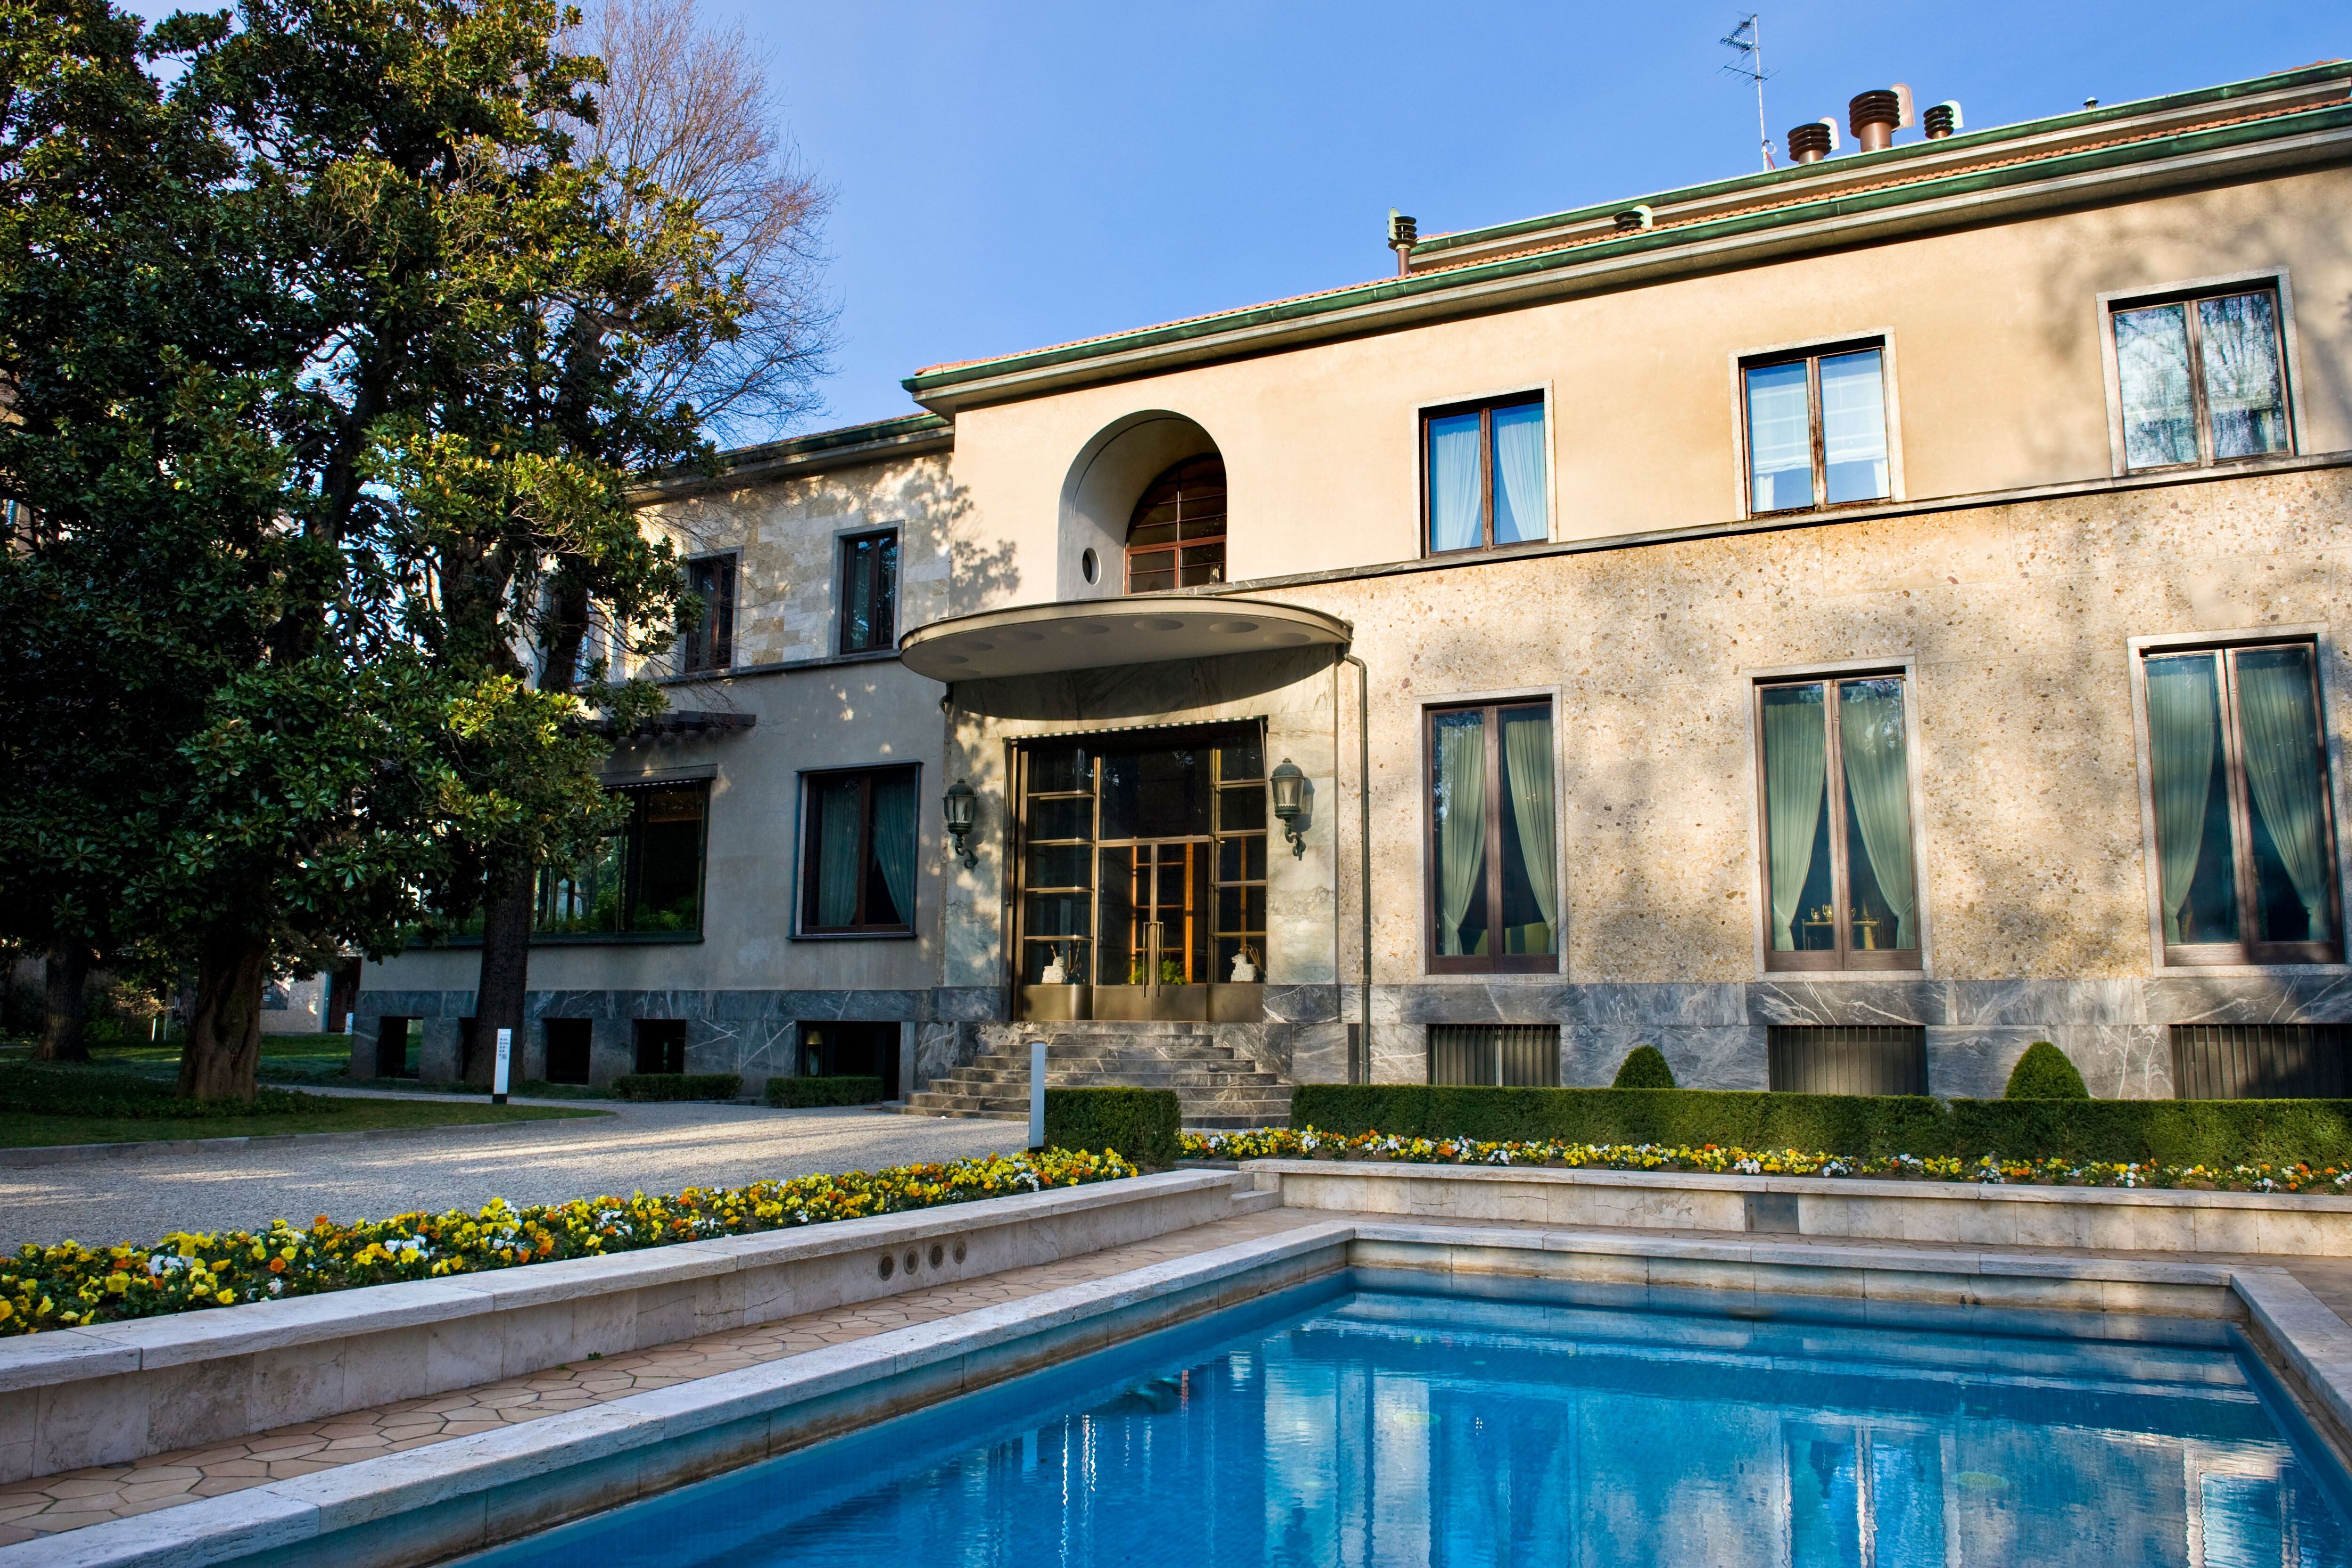 La piscina de Villa Necchi Campiglio fue la primera climatizada que se instaló en Milán.